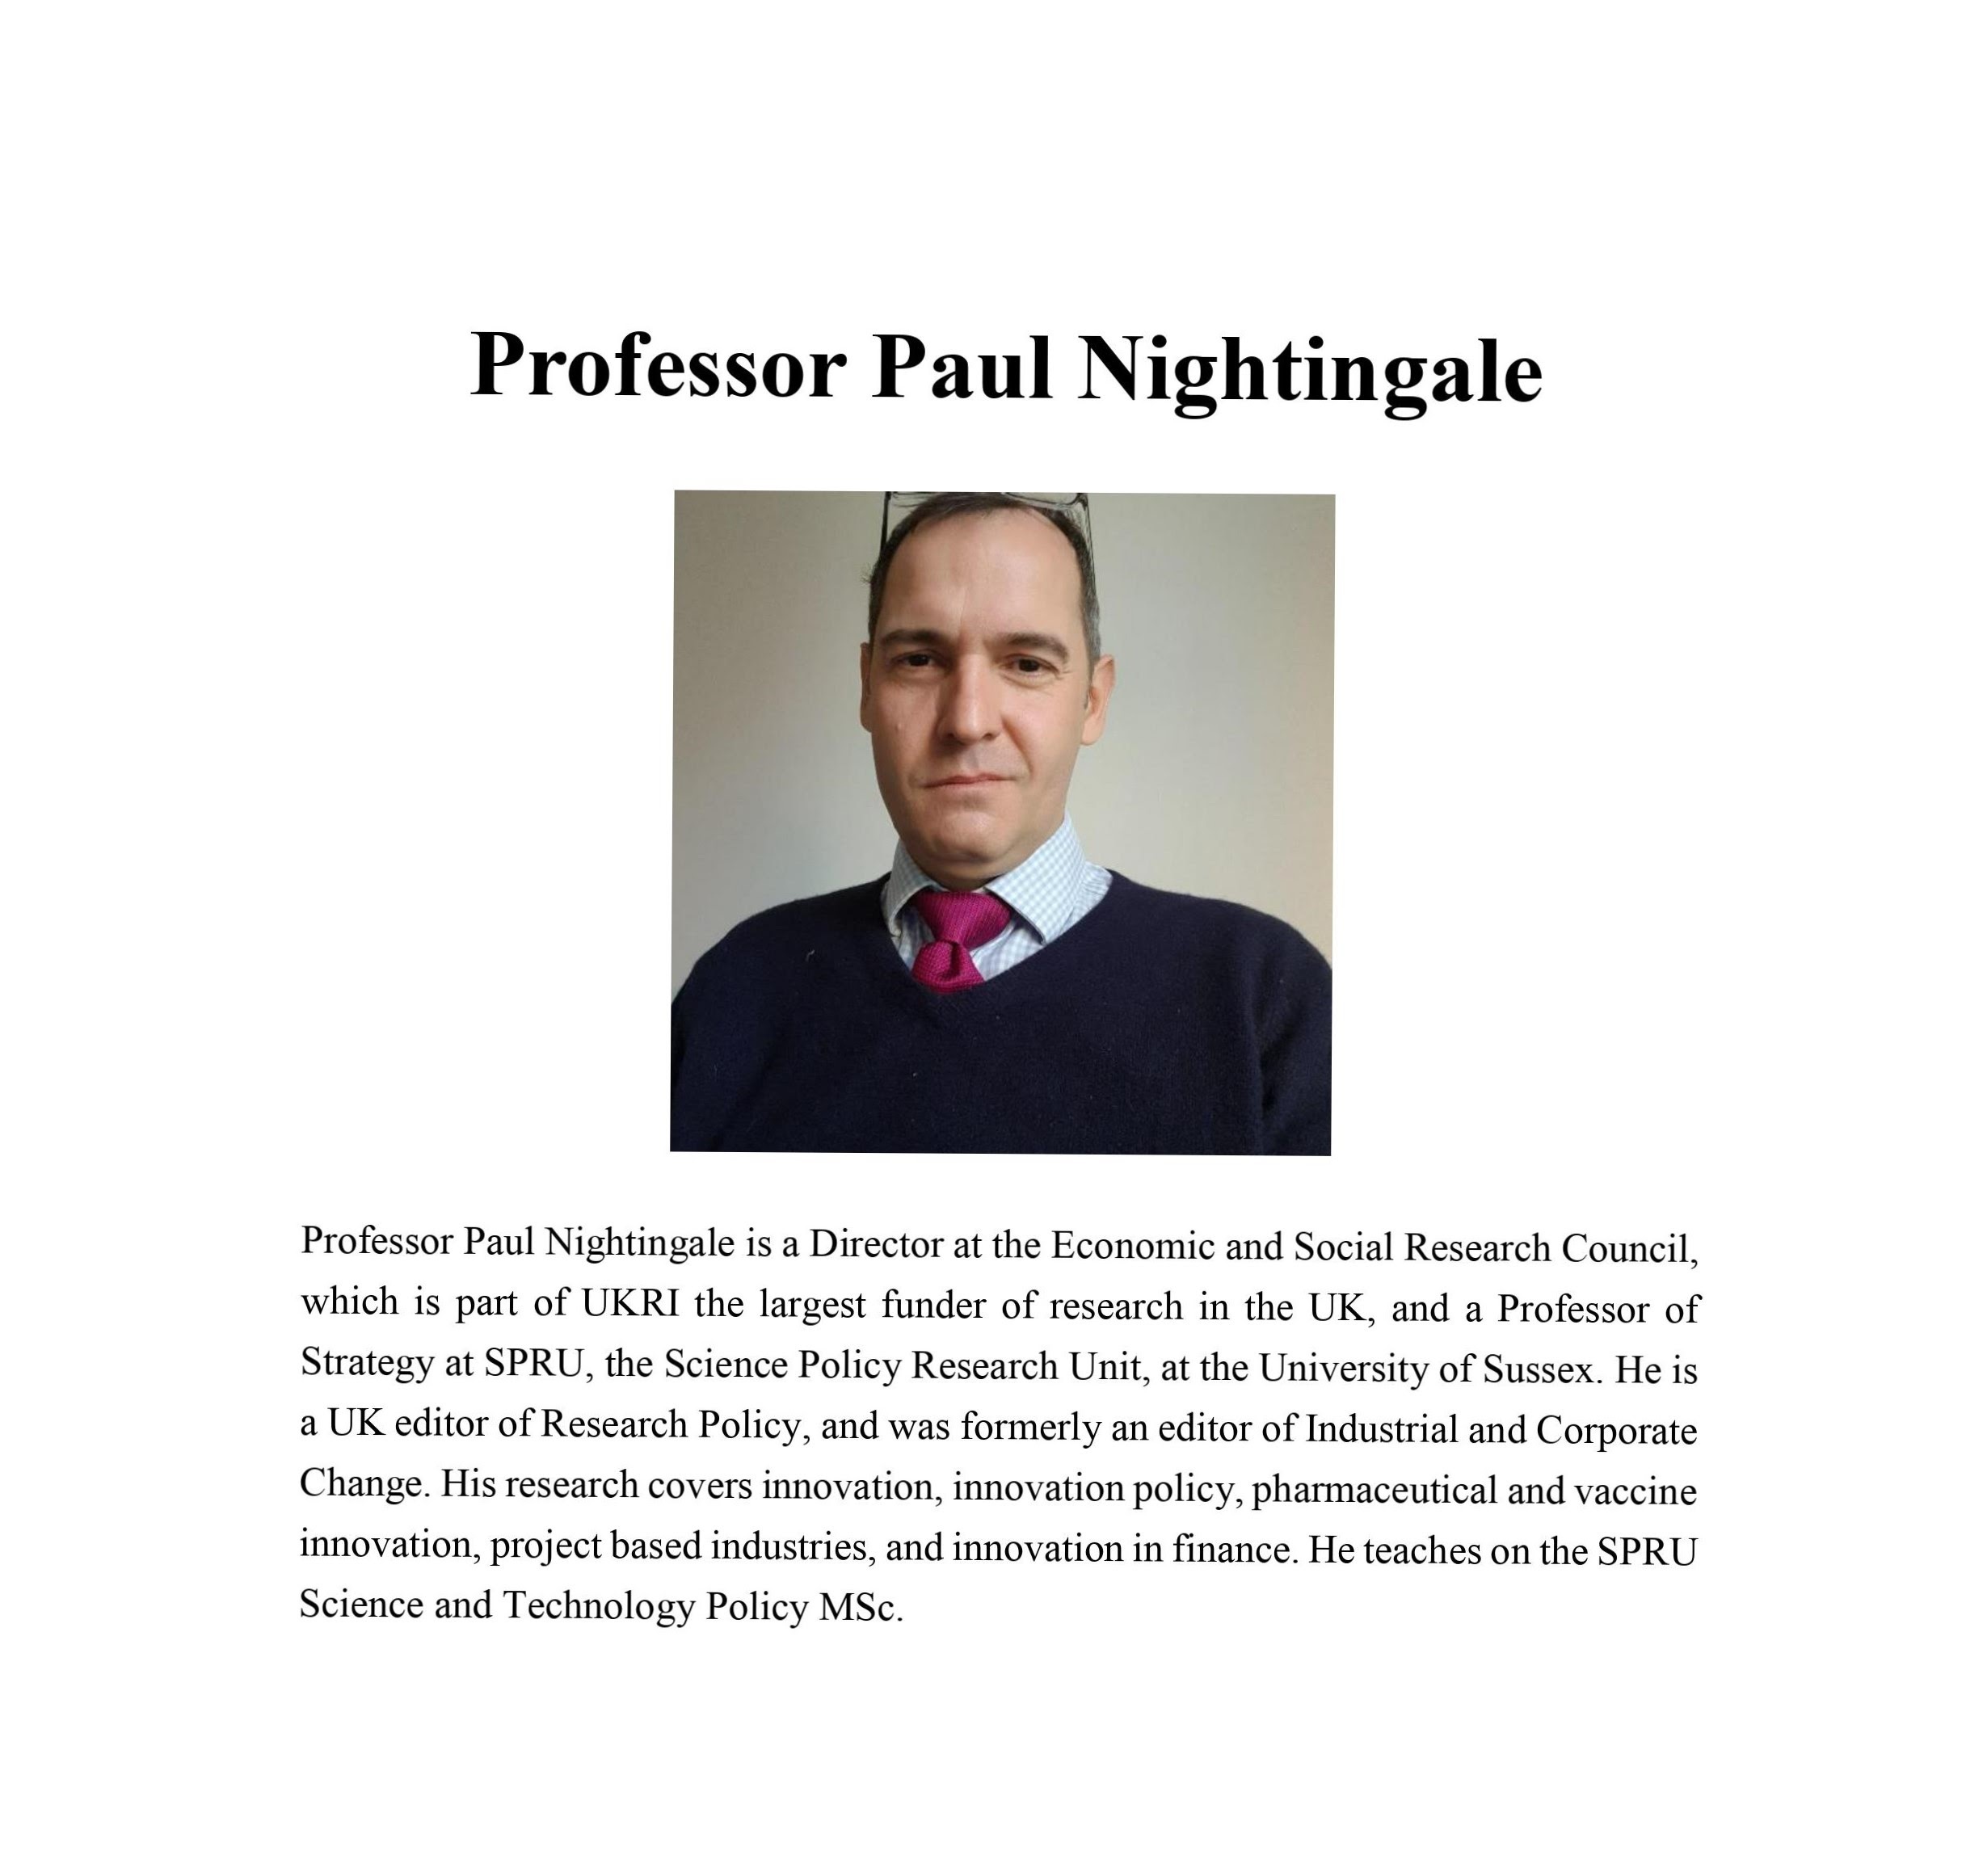 Paul Nightingale